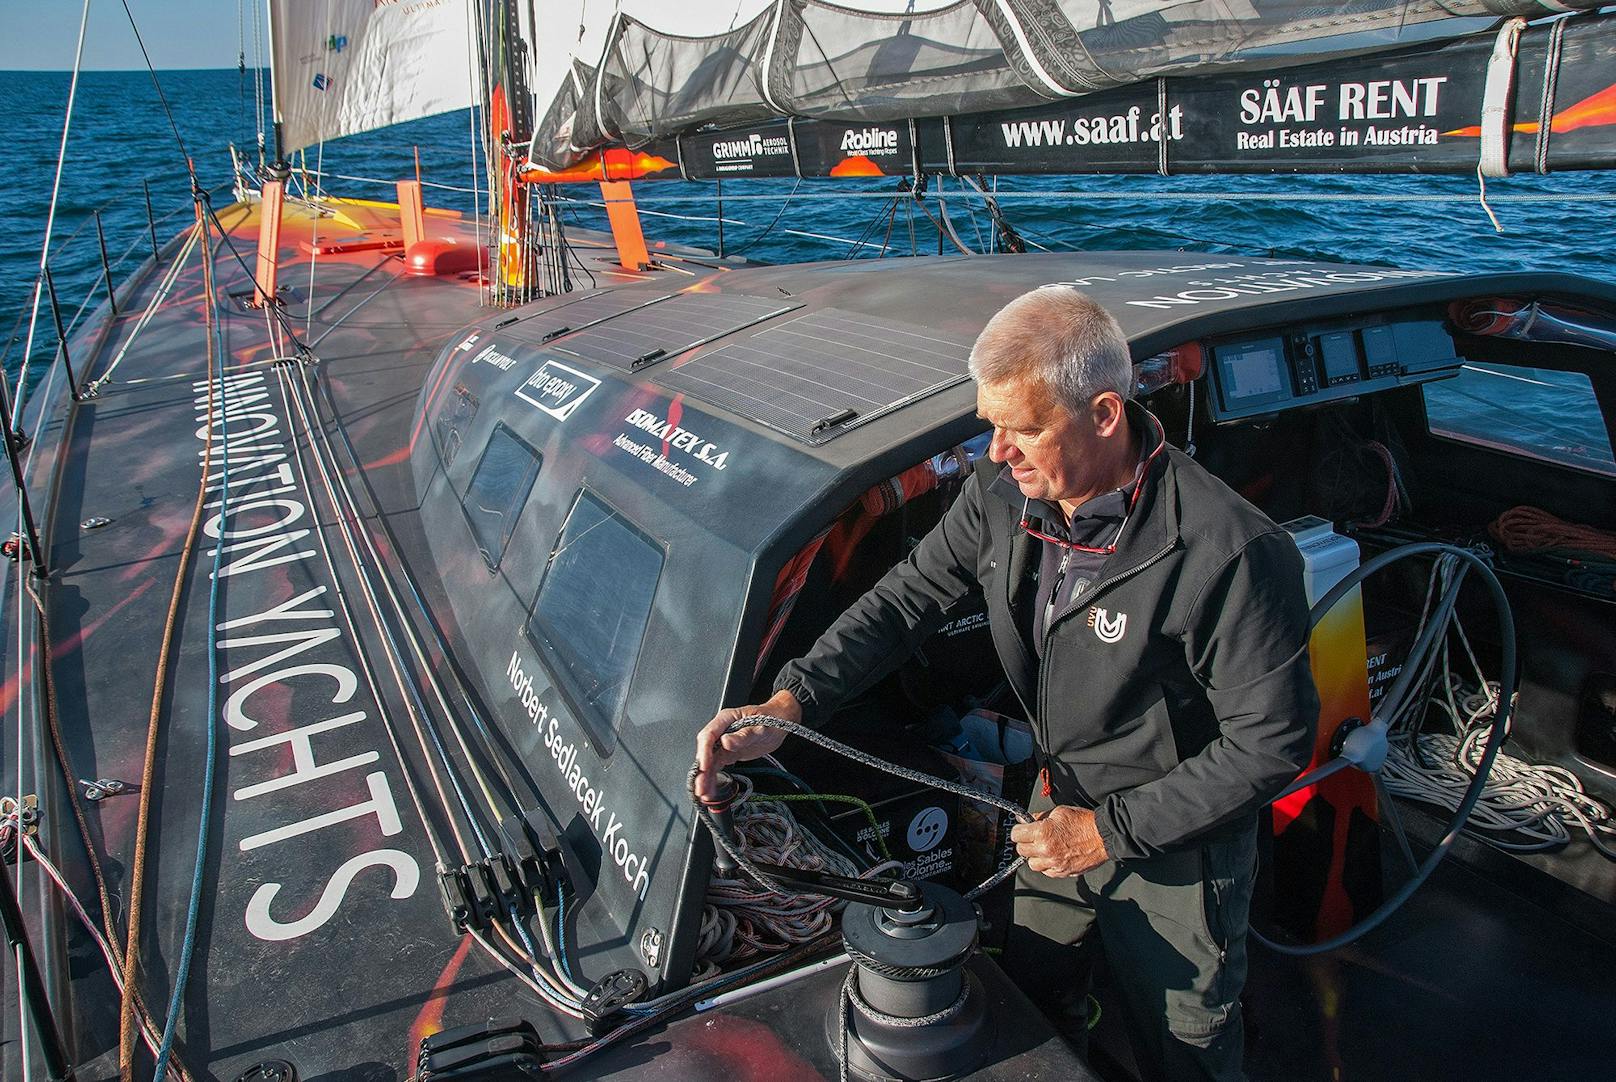 Norbert Sedlacek versucht zum 5. Mal, alleine um die Welt zu segeln. 